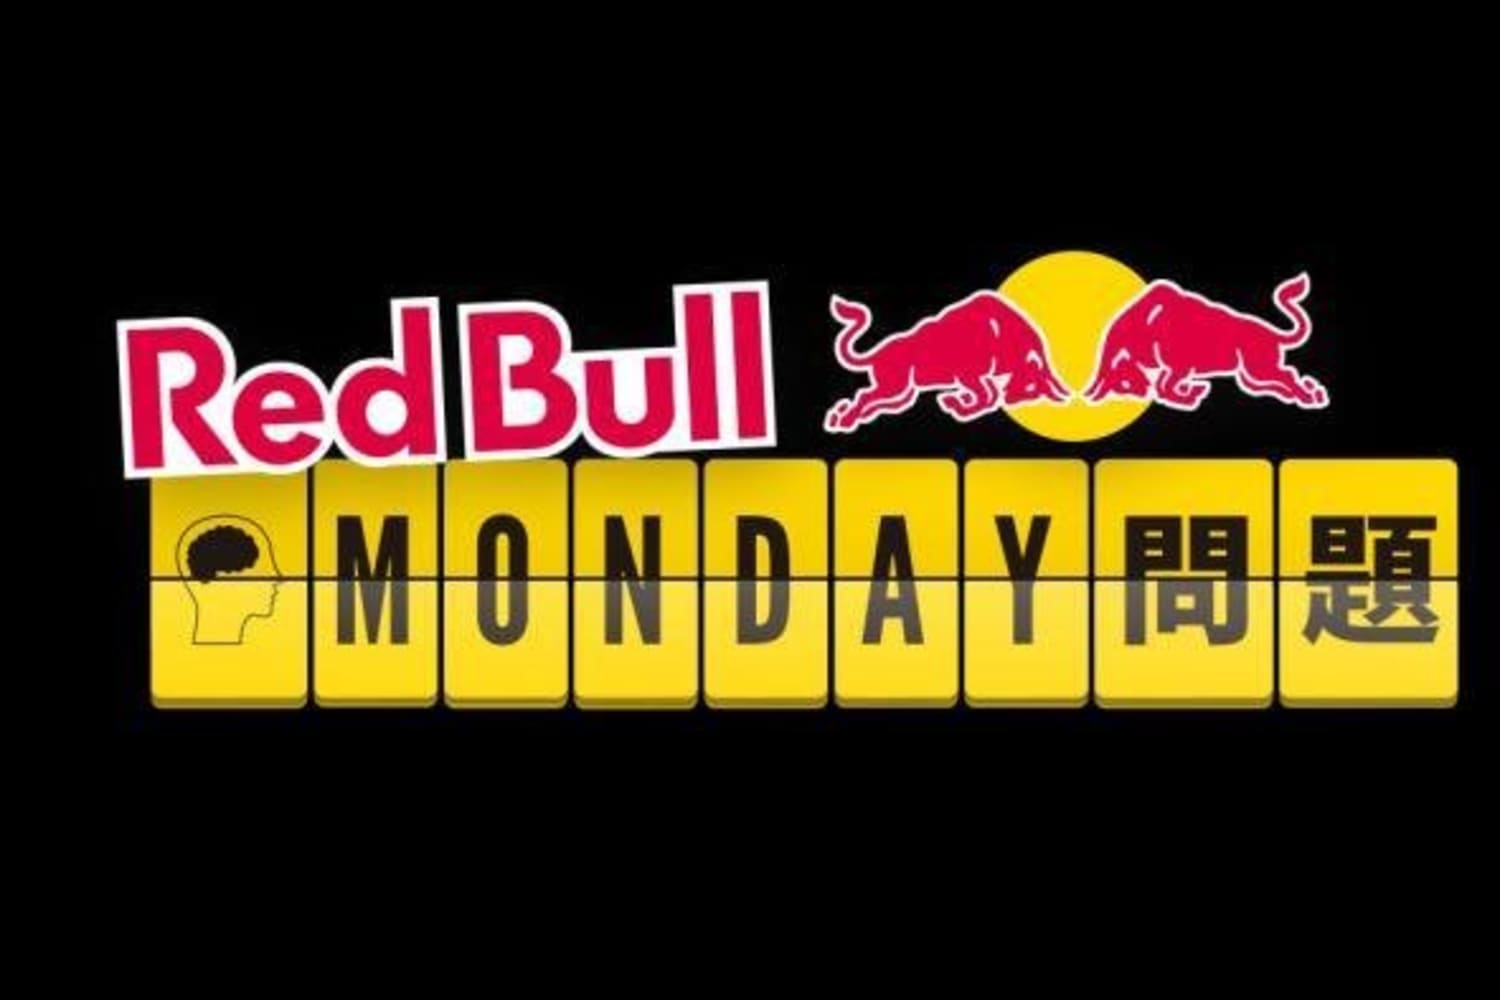 Red Bull Monday 問題があなたの脳に挑戦する